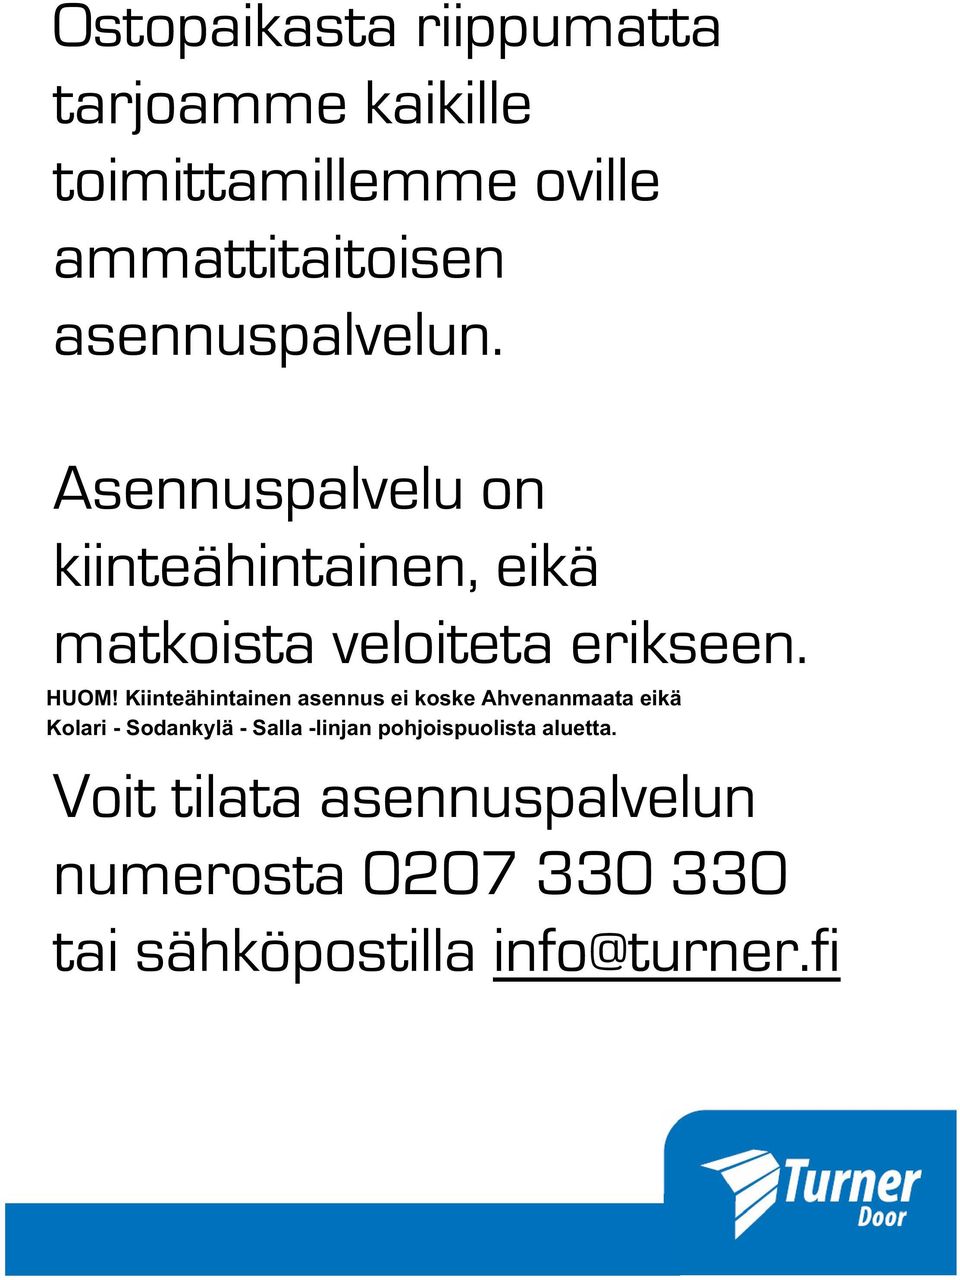 Kiinteähintainen asennus ei koske Ahvenanmaata eikä Kolari - Sodankylä - Salla -linjan